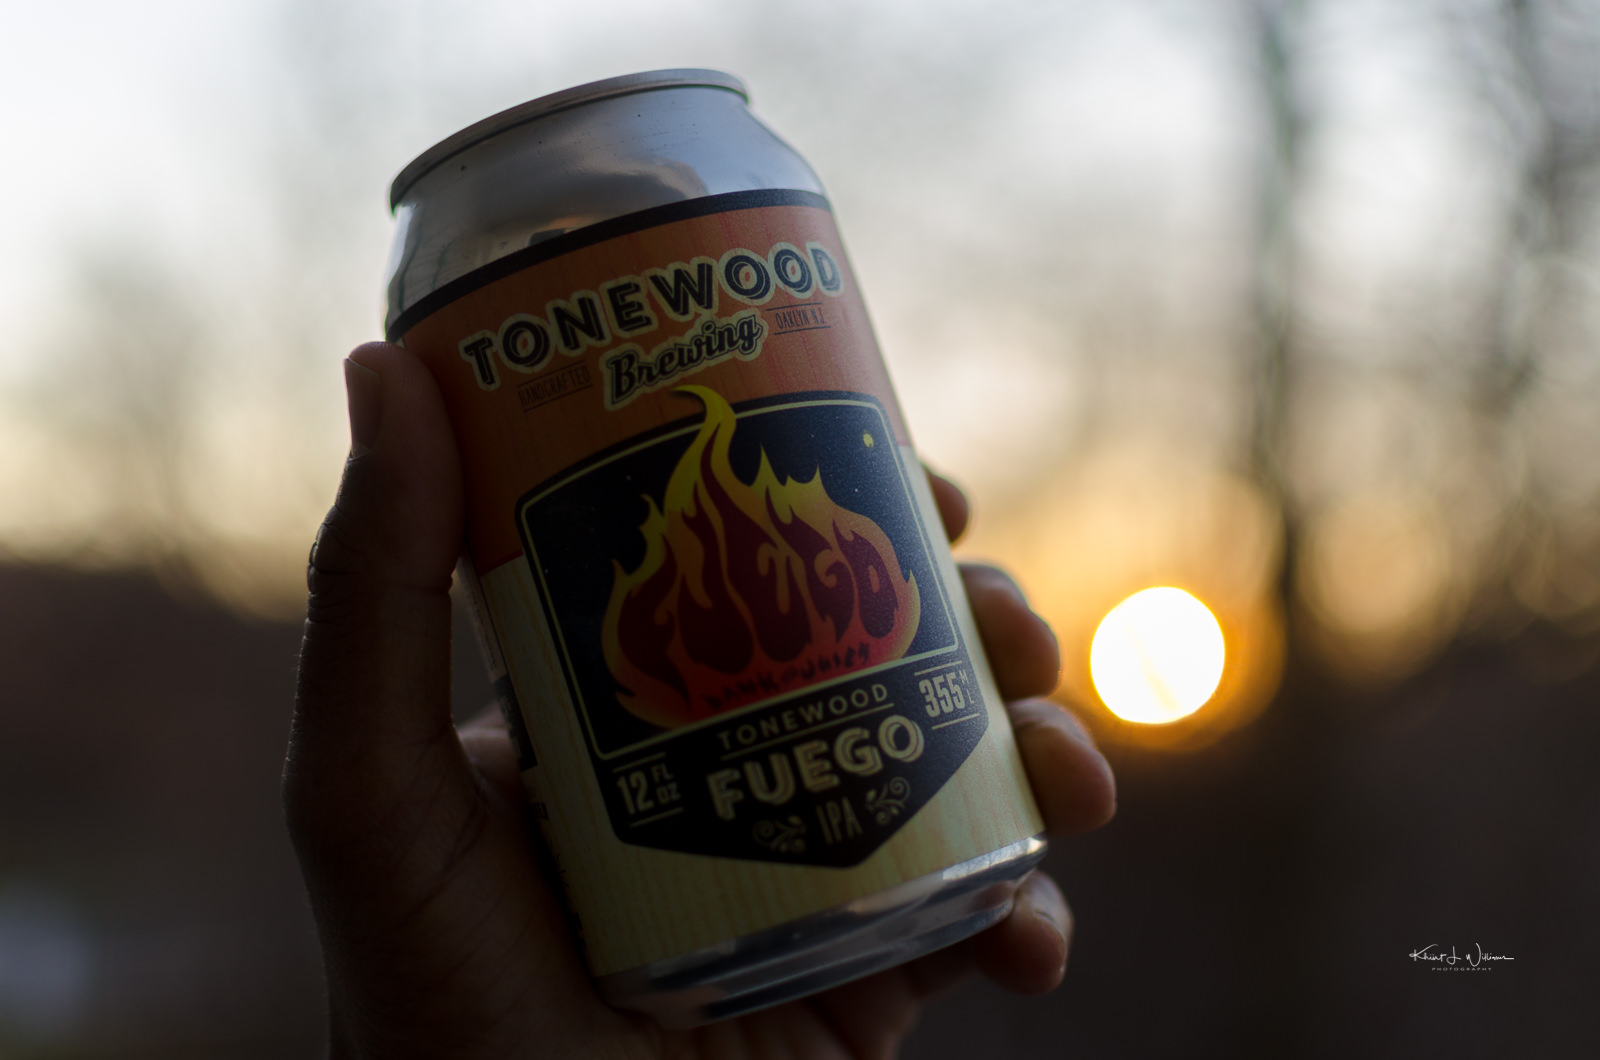 Tonewood Brewing's Fuego